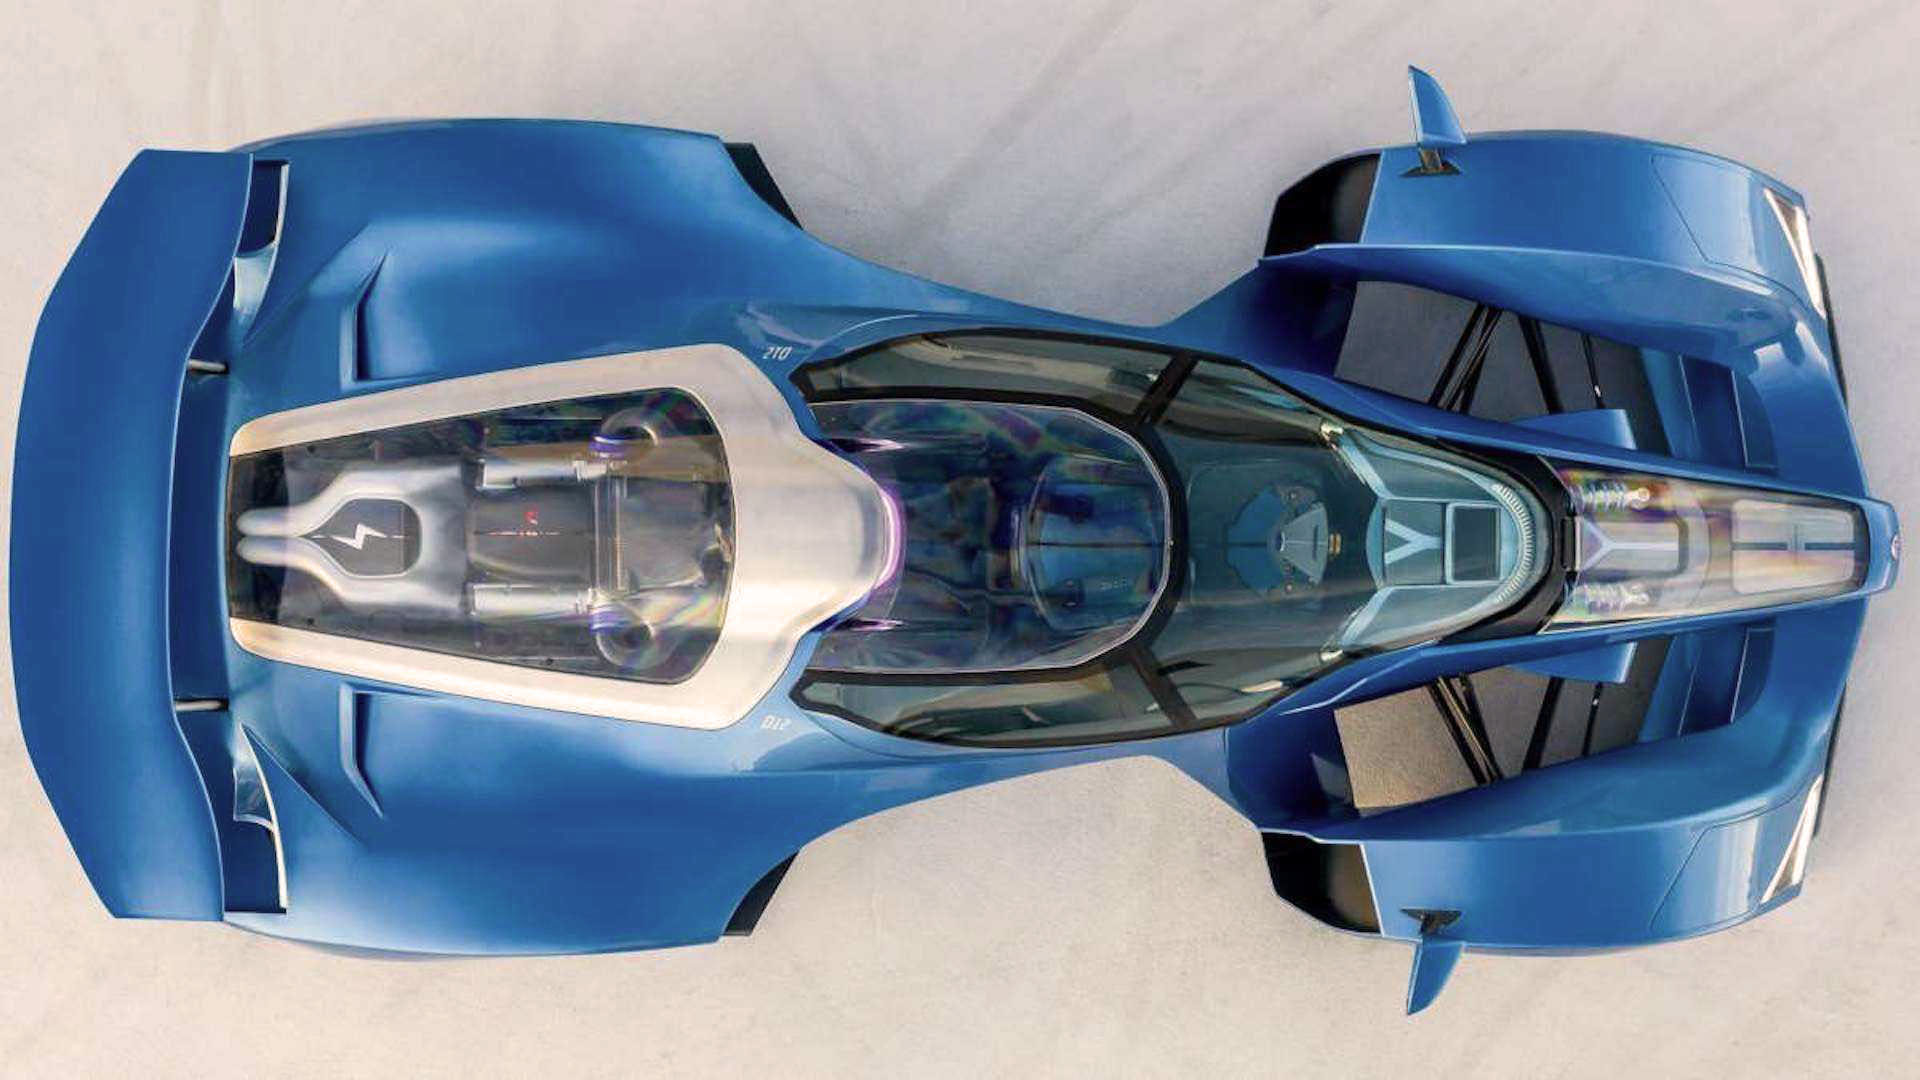 La vista superior del Delage D12 muestra su silueta indiscutiblemente inspirada en un auto de Fórmula 1